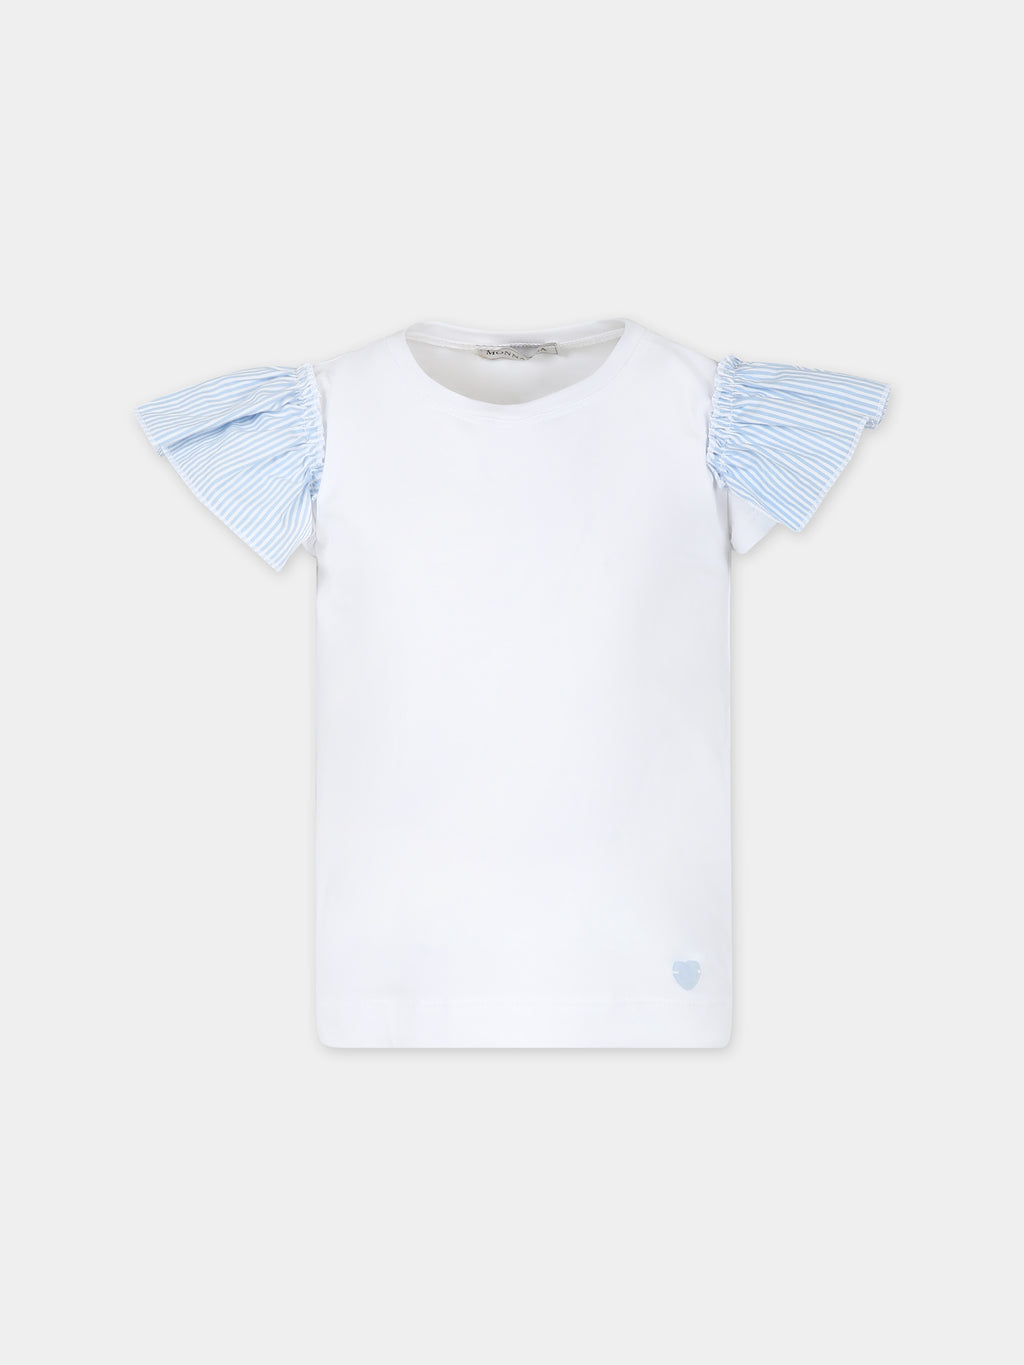 T-shirt blanc pour fille avec coer bleu ciel